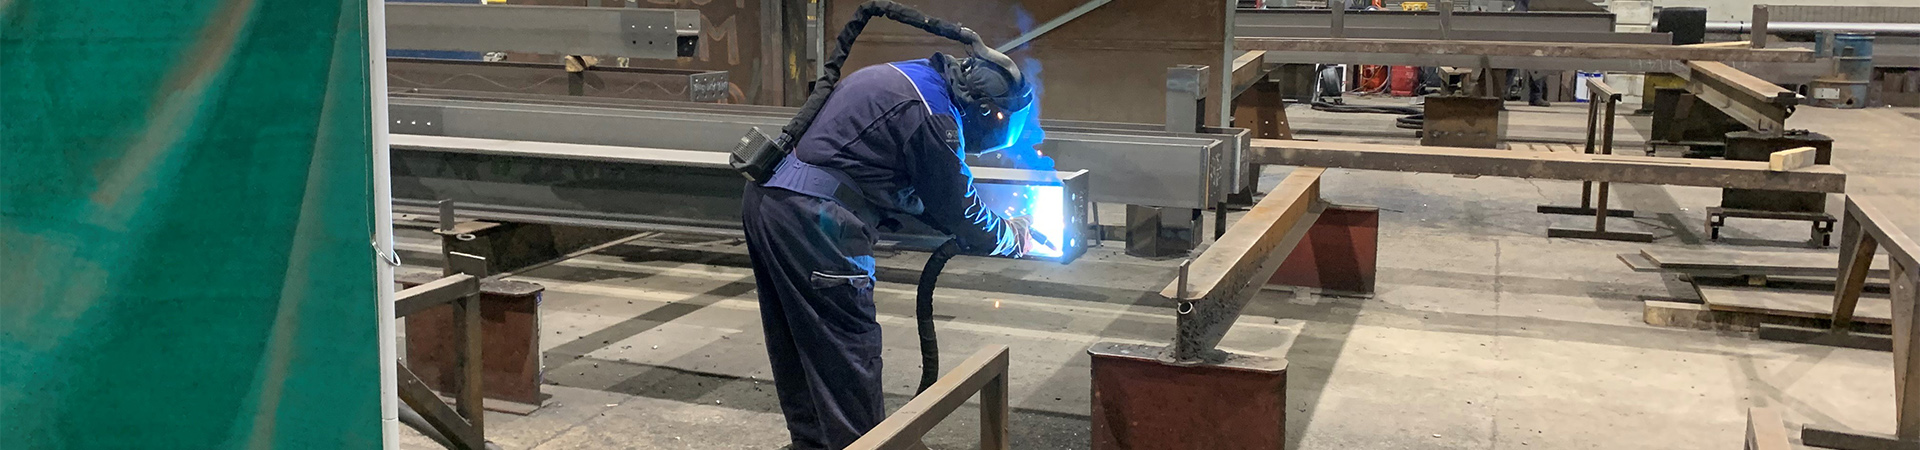 Steel arc welder